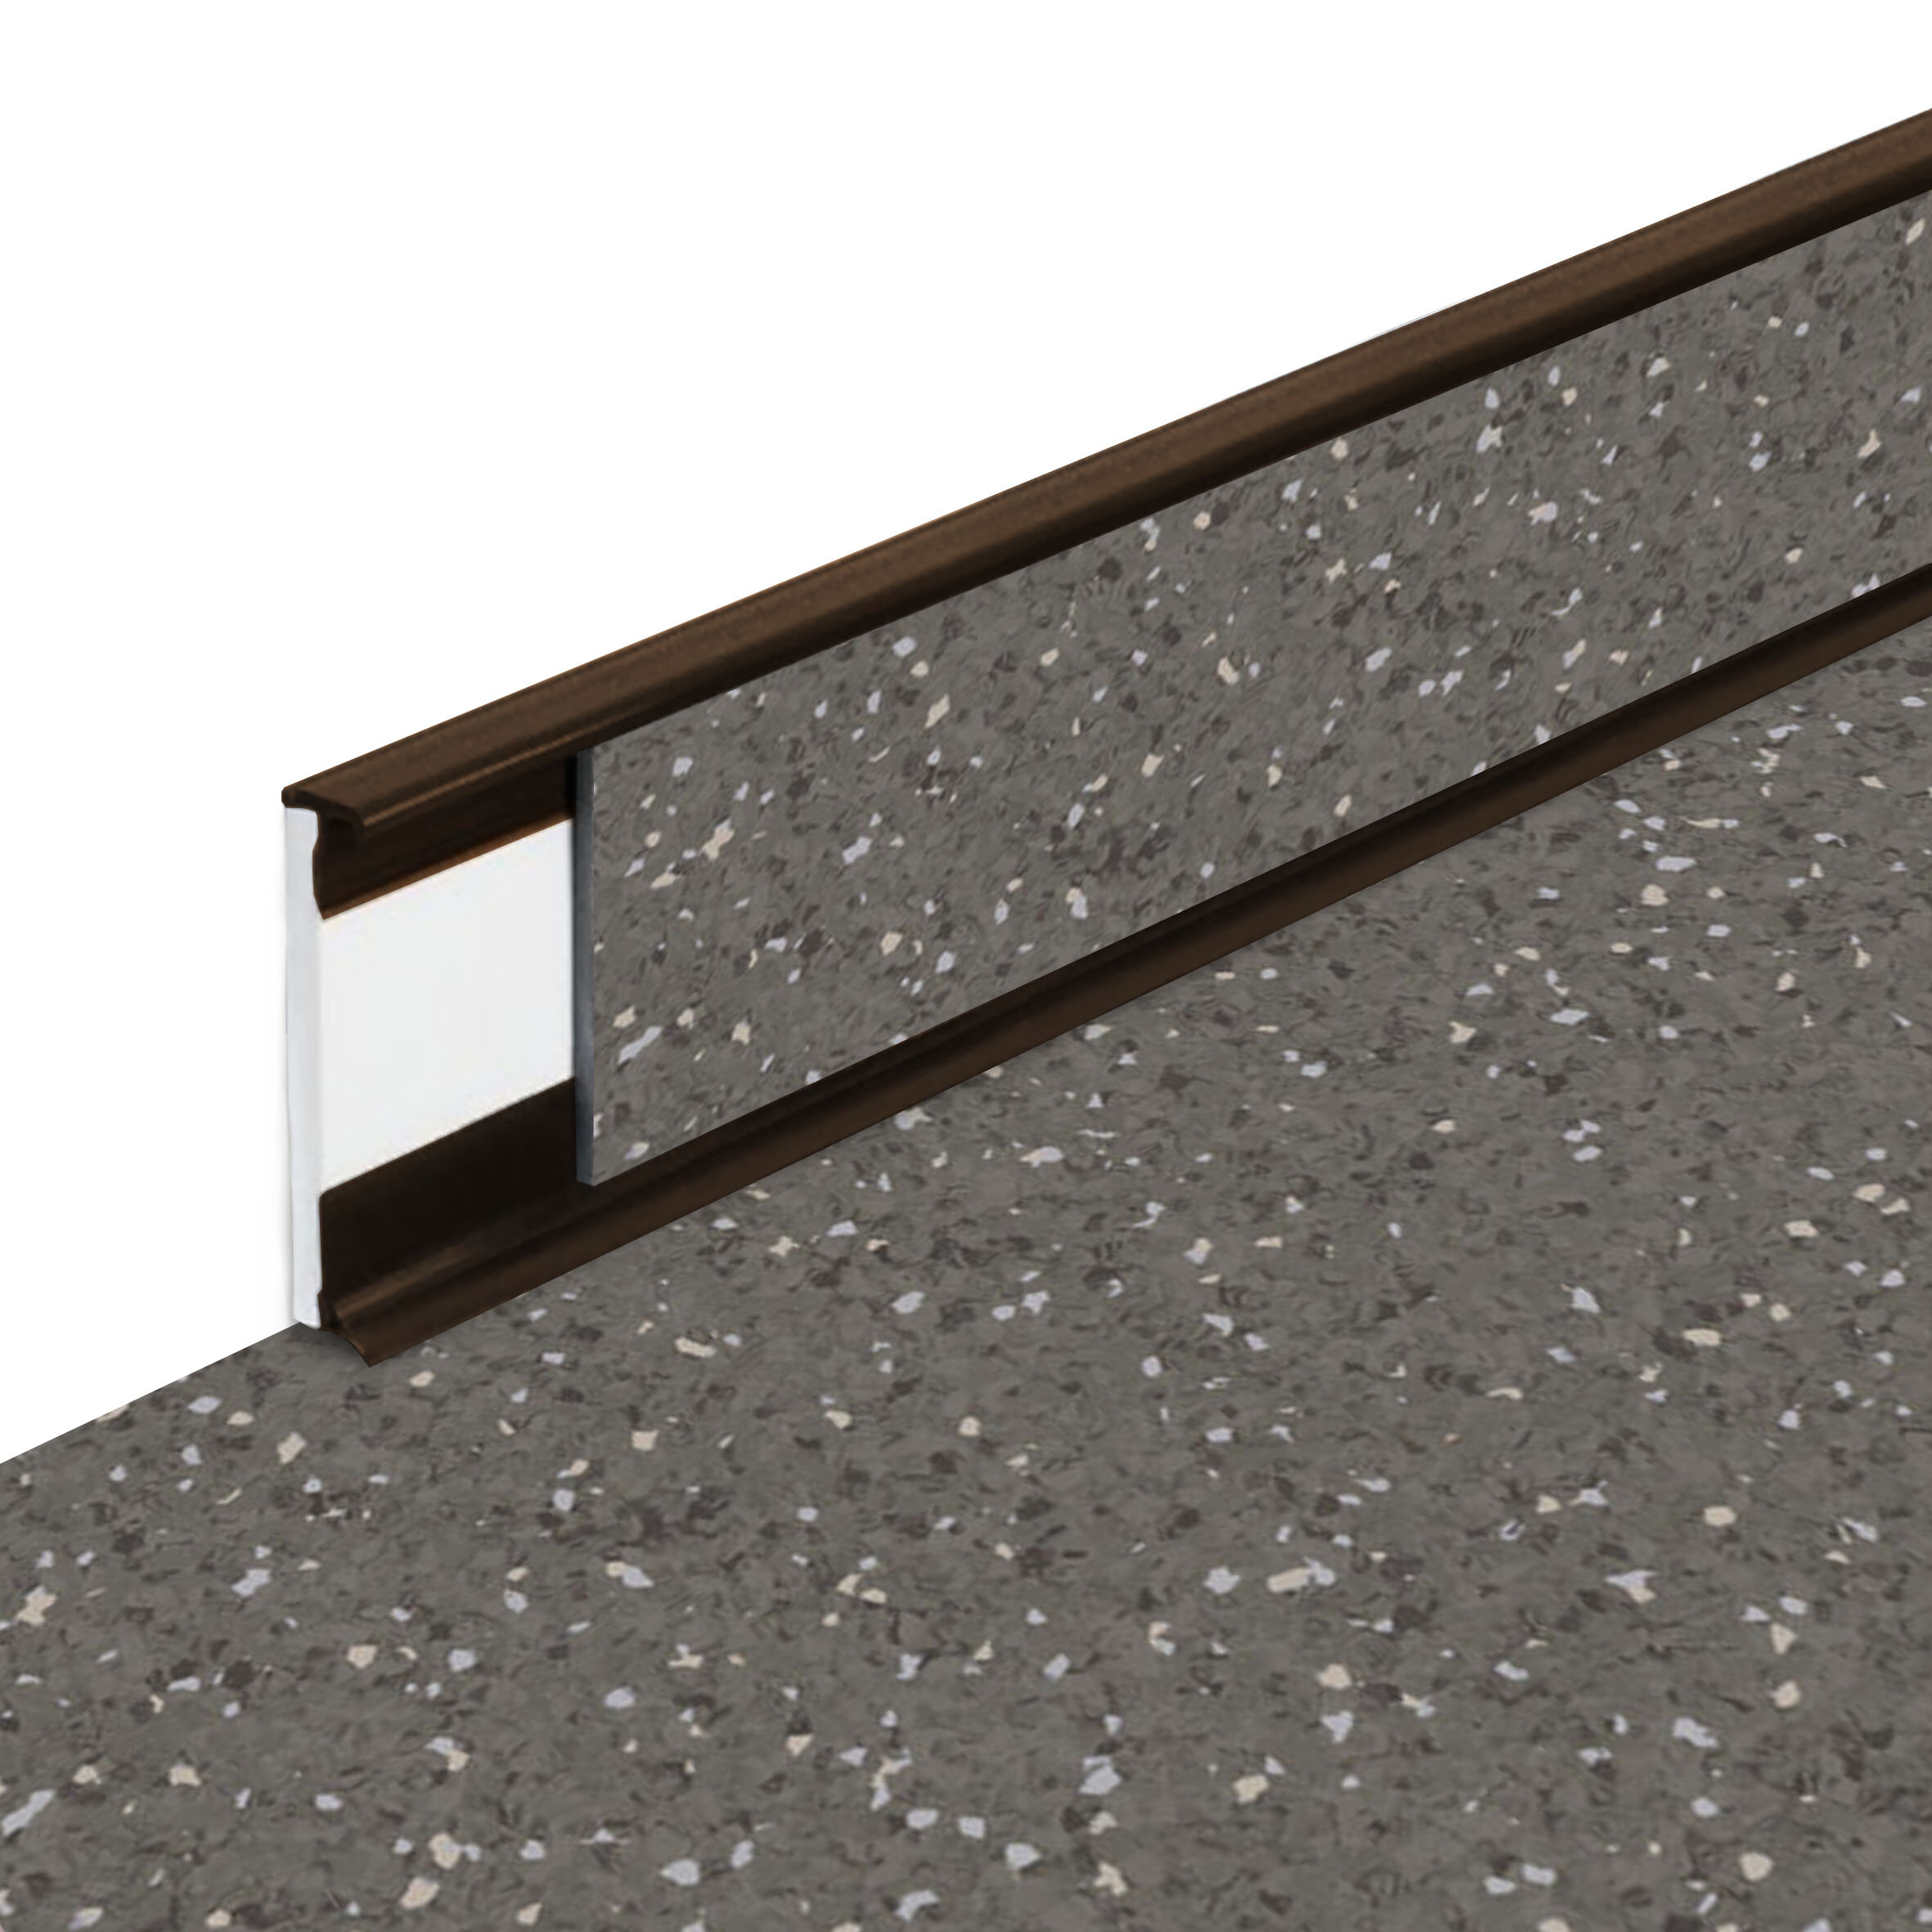 PVC vinylová soklová podlahová lišta Fortelock Business Sauda Cold Lava G003 Brown - délka 200 cm, výška 5,8 cm, tloušťka 1,2 cm